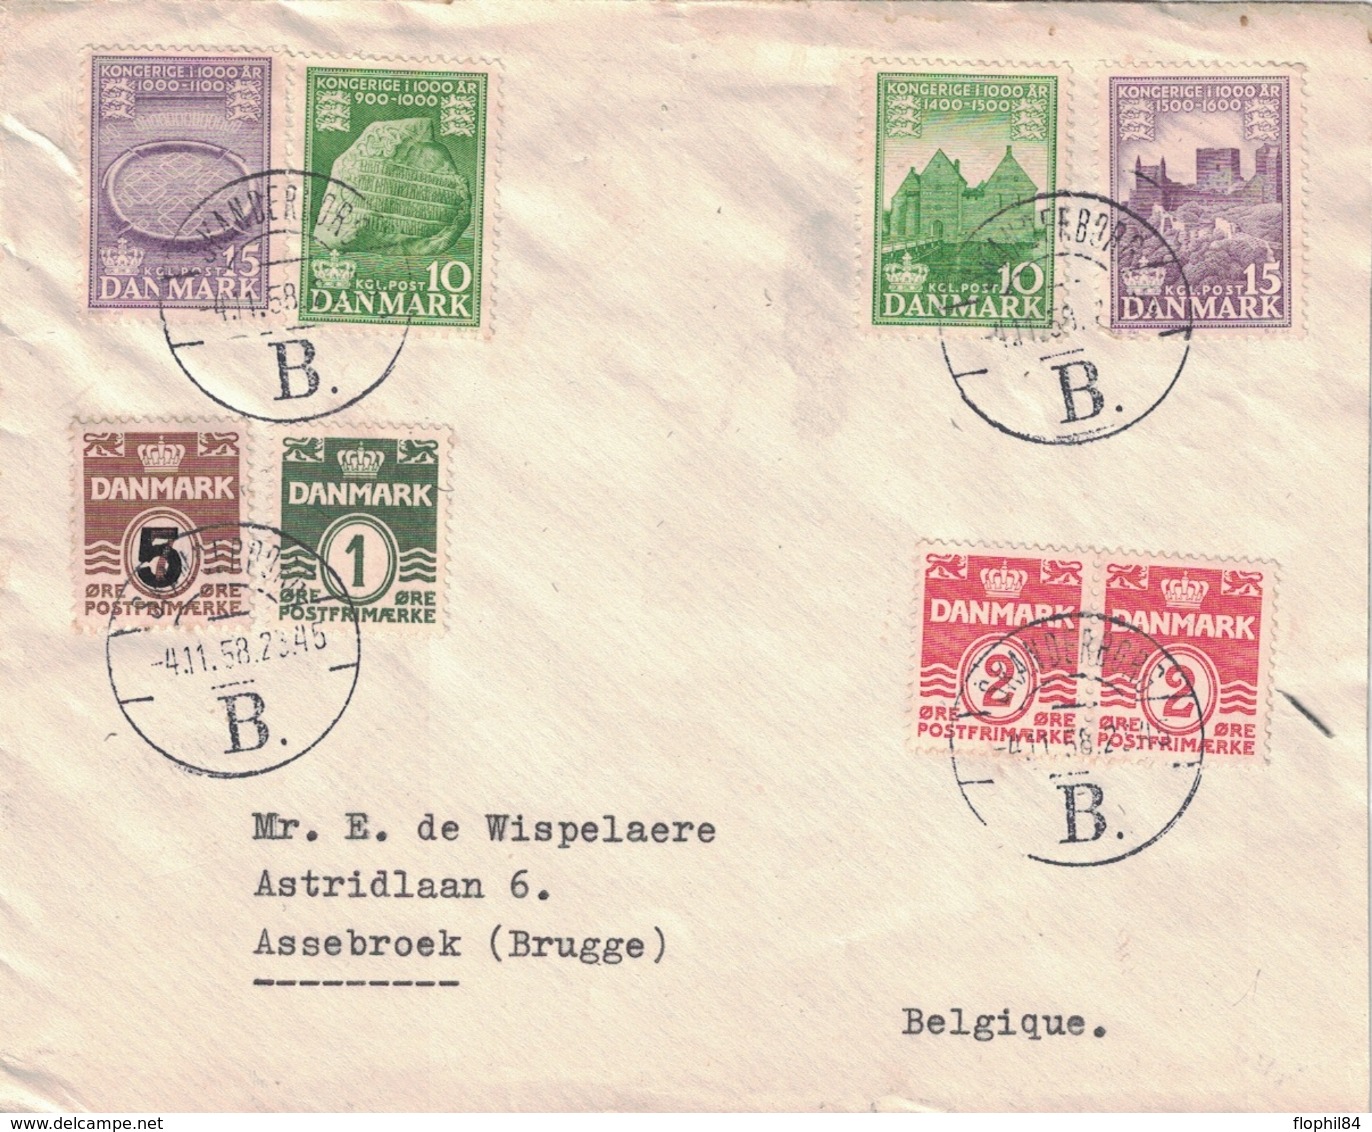 DANEMARK - SKANDERBORG - LE 4 NOVEMBRE 1958 - SUPERBE AFFRANCHISSEMENT POUR LA BELGIQUE. - Lettres & Documents